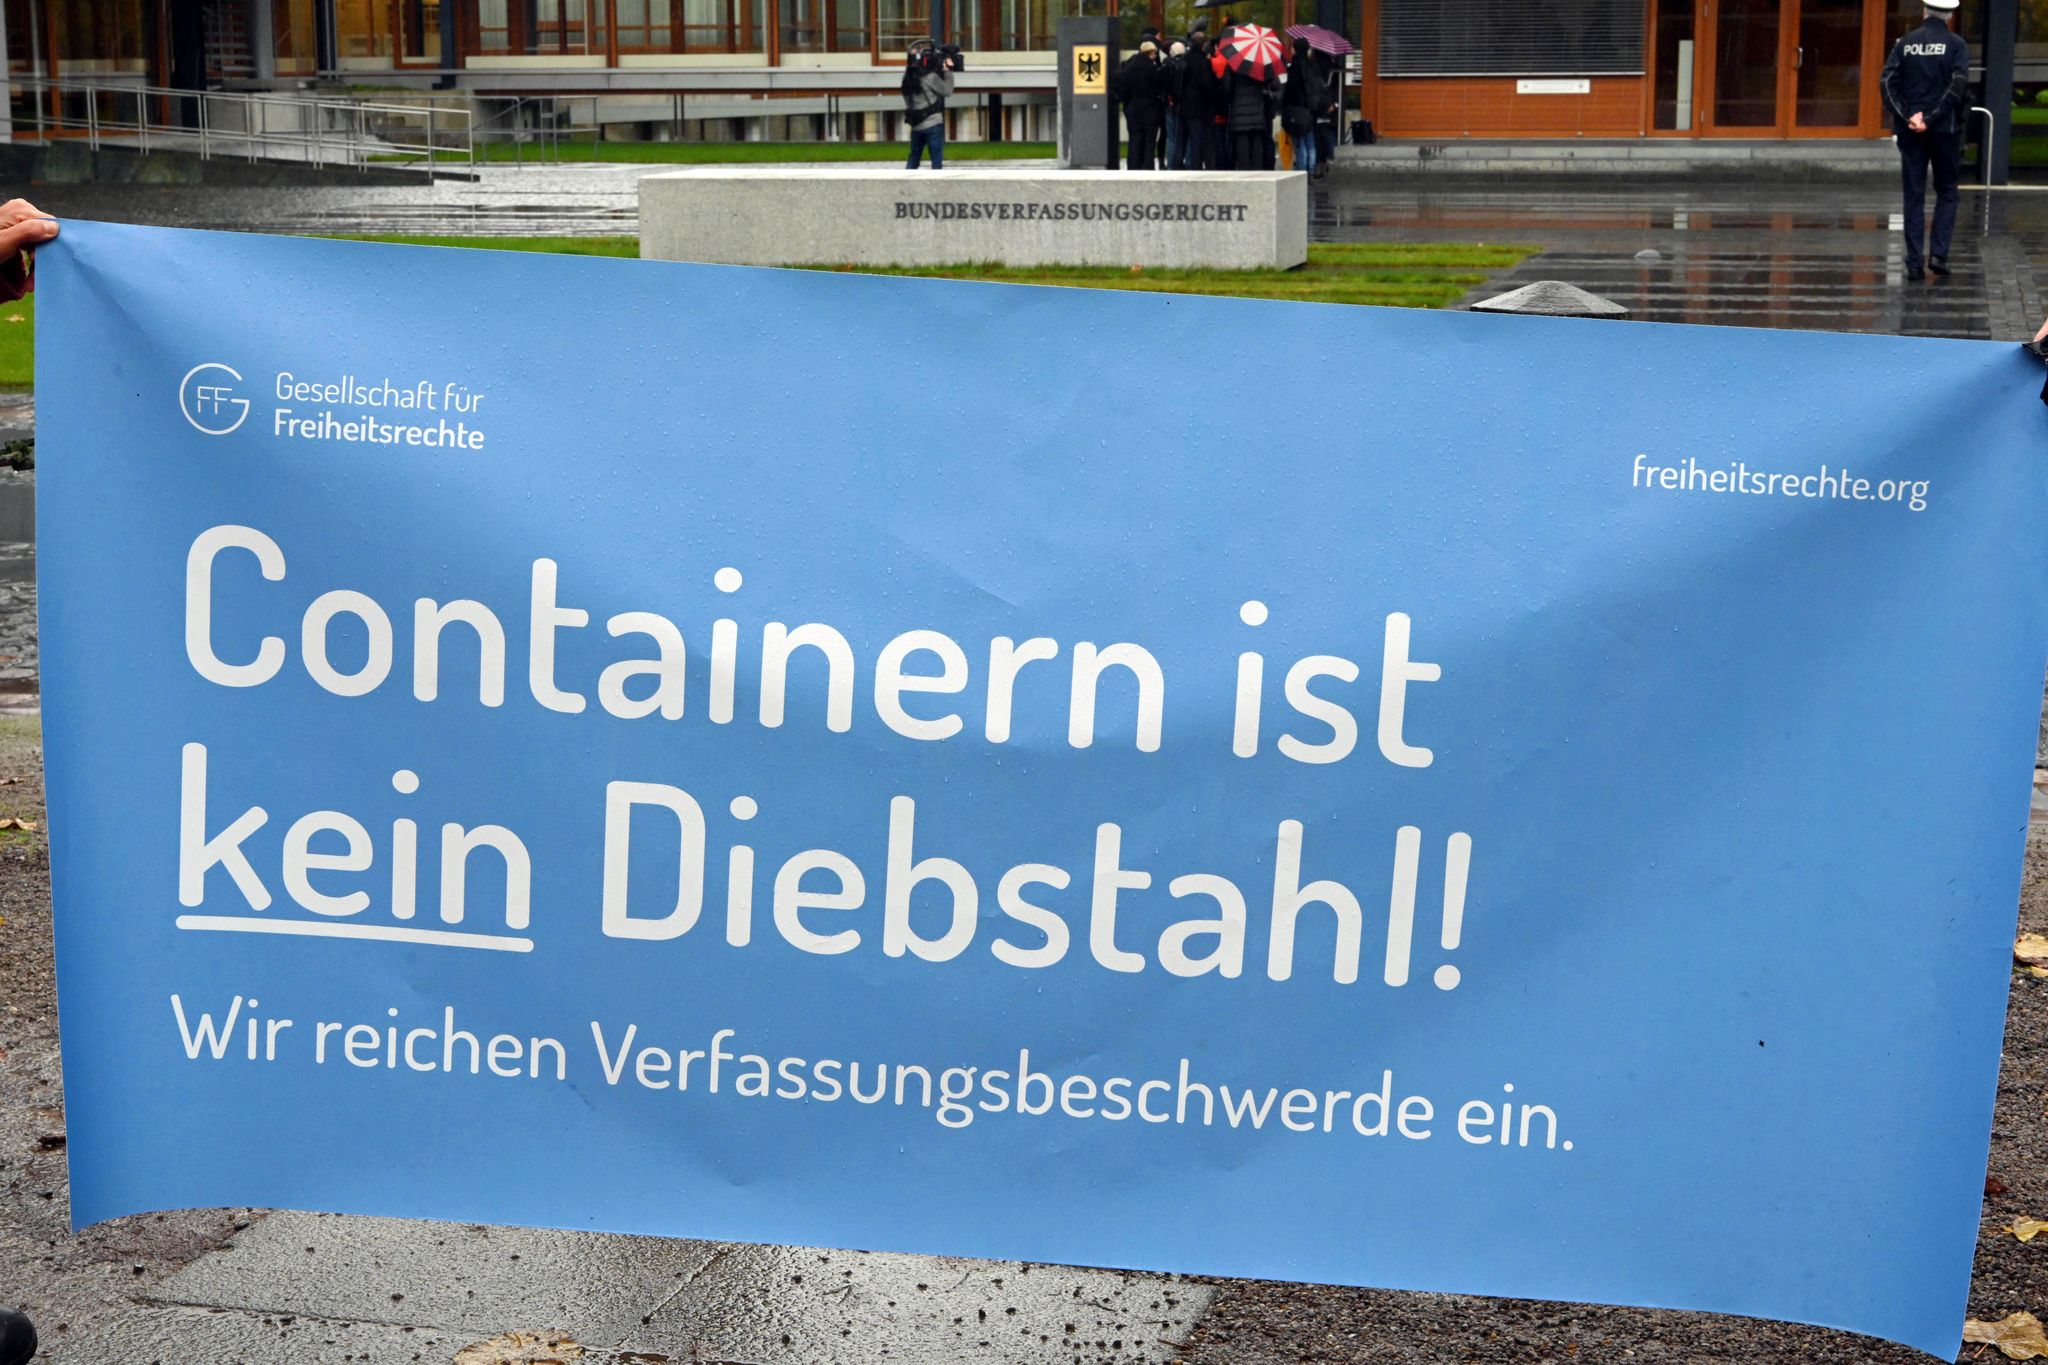 Vor dem Bundesverfassungsgericht wird ein ein Transparent gehalten auf dem steht „Containern ist kein Diebstahl!"